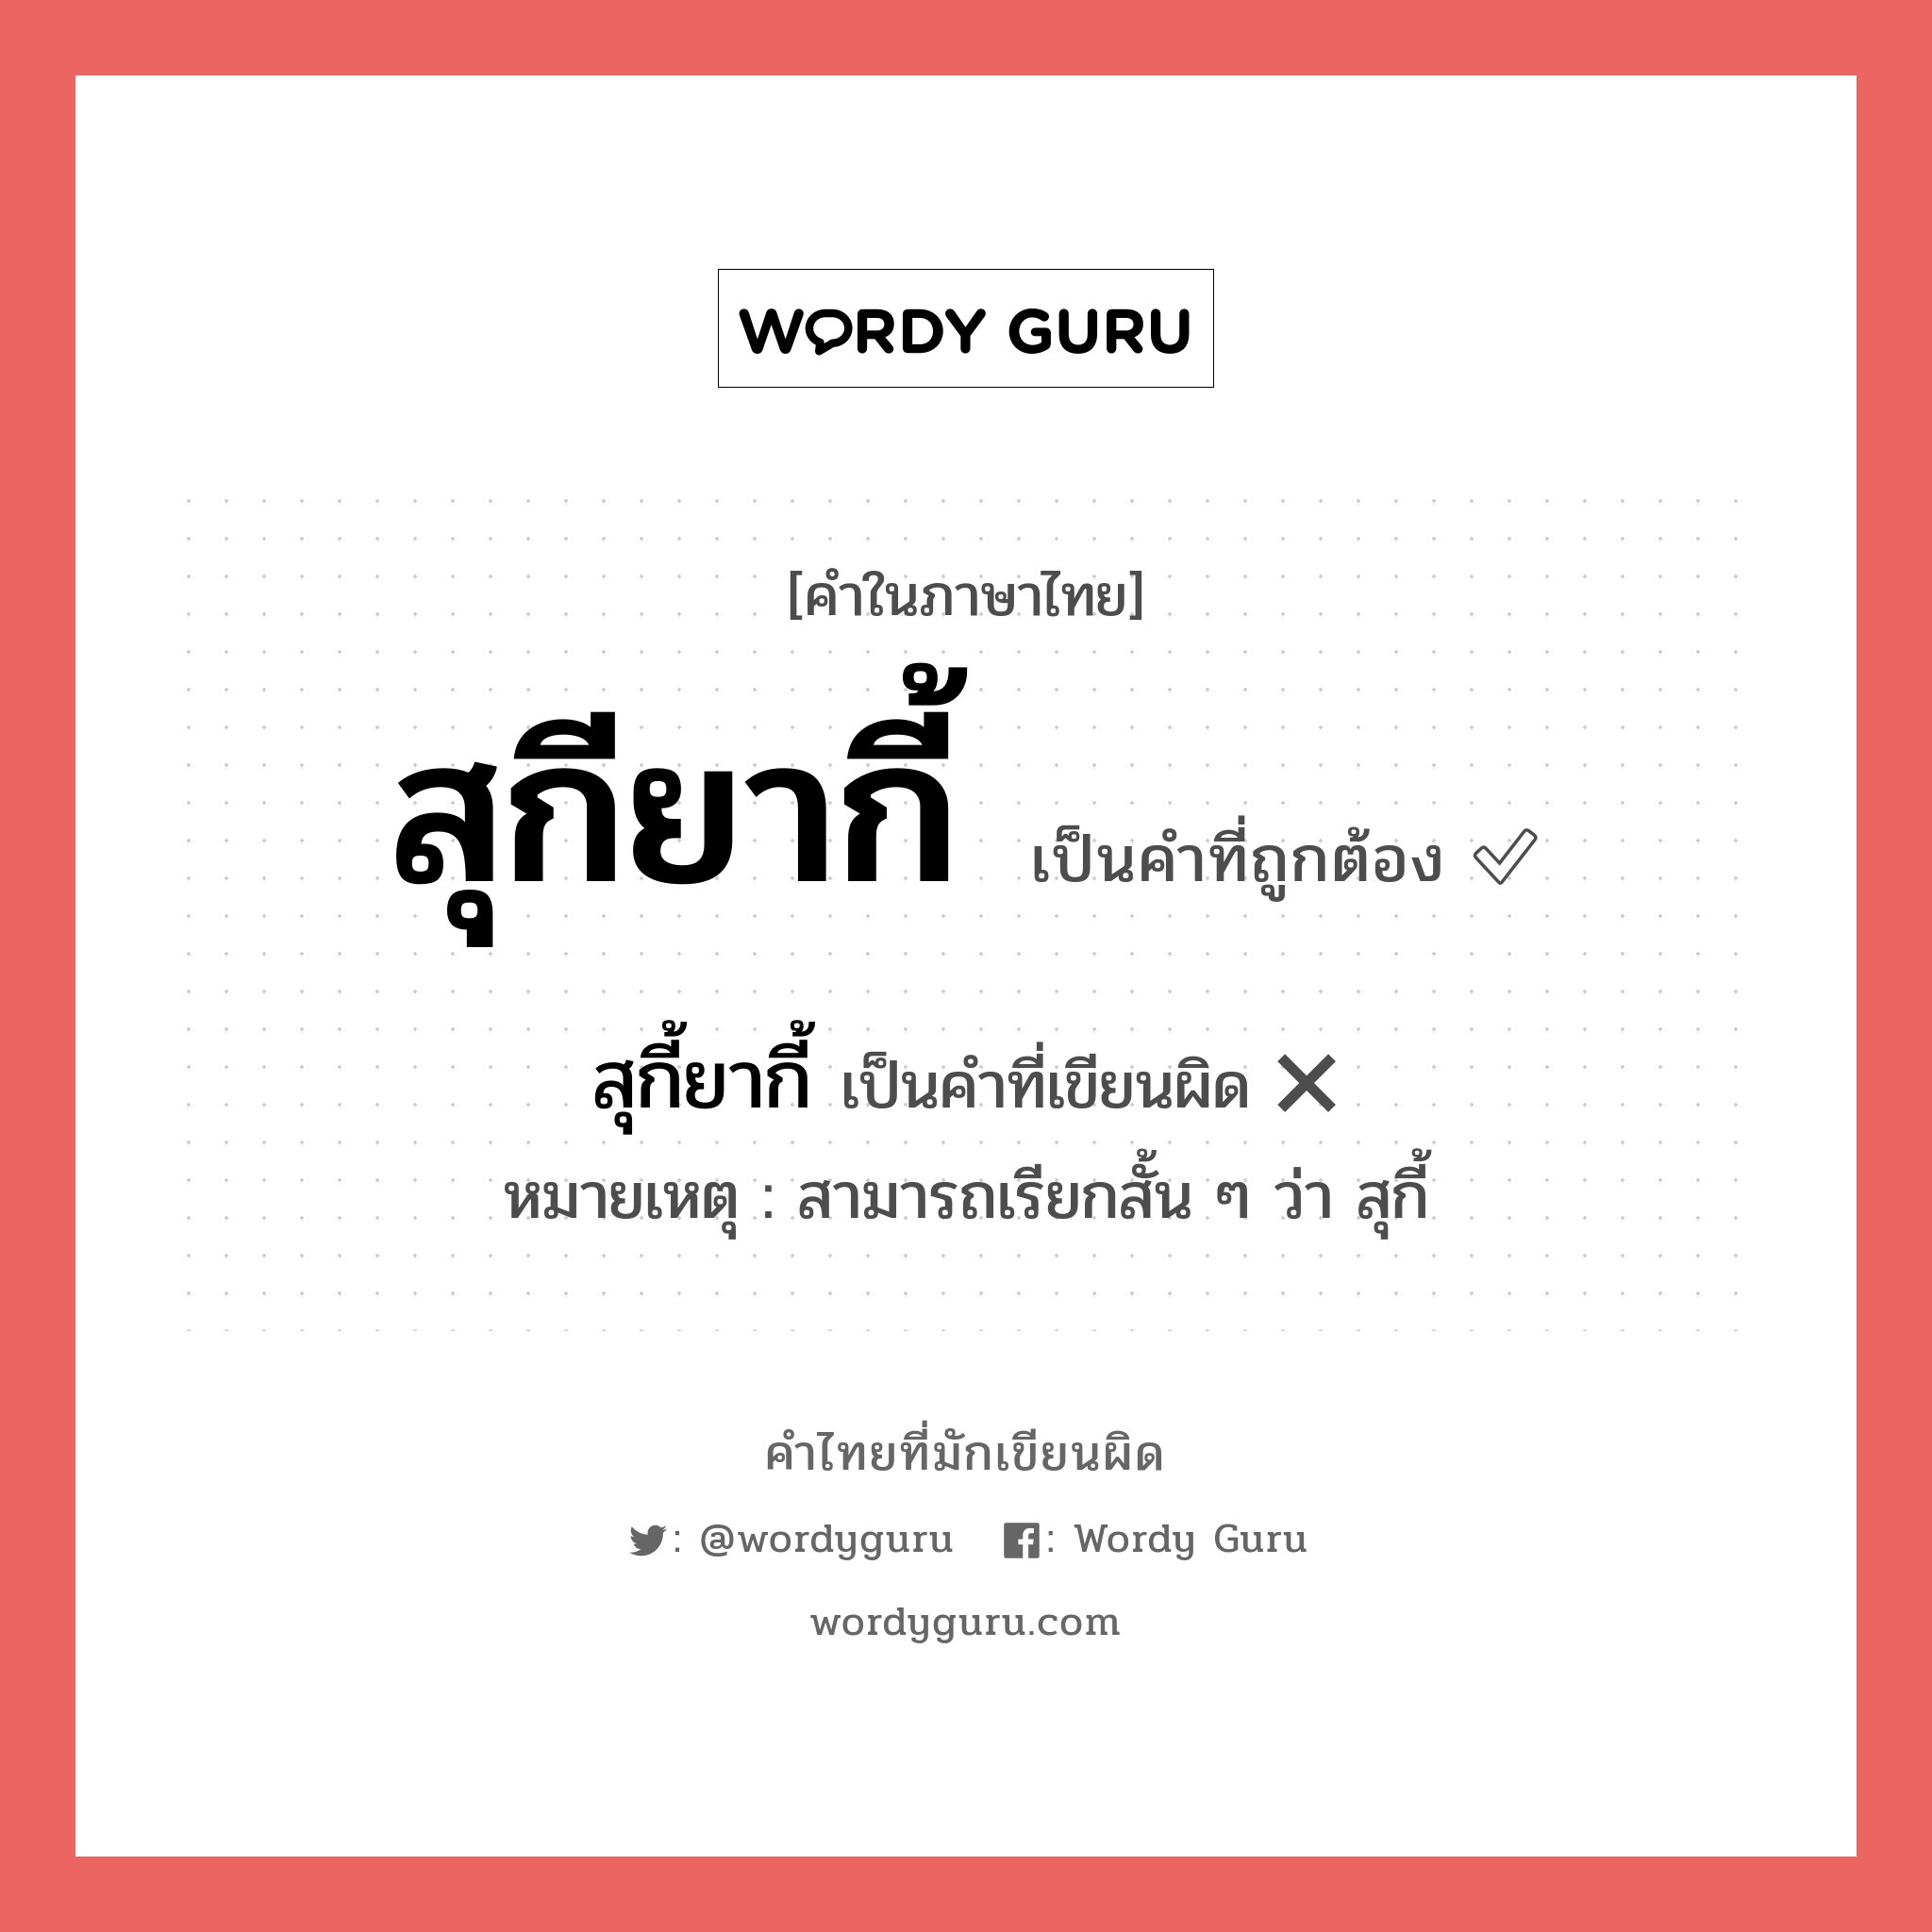 สุกียากี้ หรือ สุกี้ยากี้ คำไหนเขียนถูก?, คำในภาษาไทยที่มักเขียนผิด สุกียากี้ คำที่ผิด ❌ สุกี้ยากี้ หมายเหตุ สามารถเรียกสั้น ๆ ว่า สุกี้